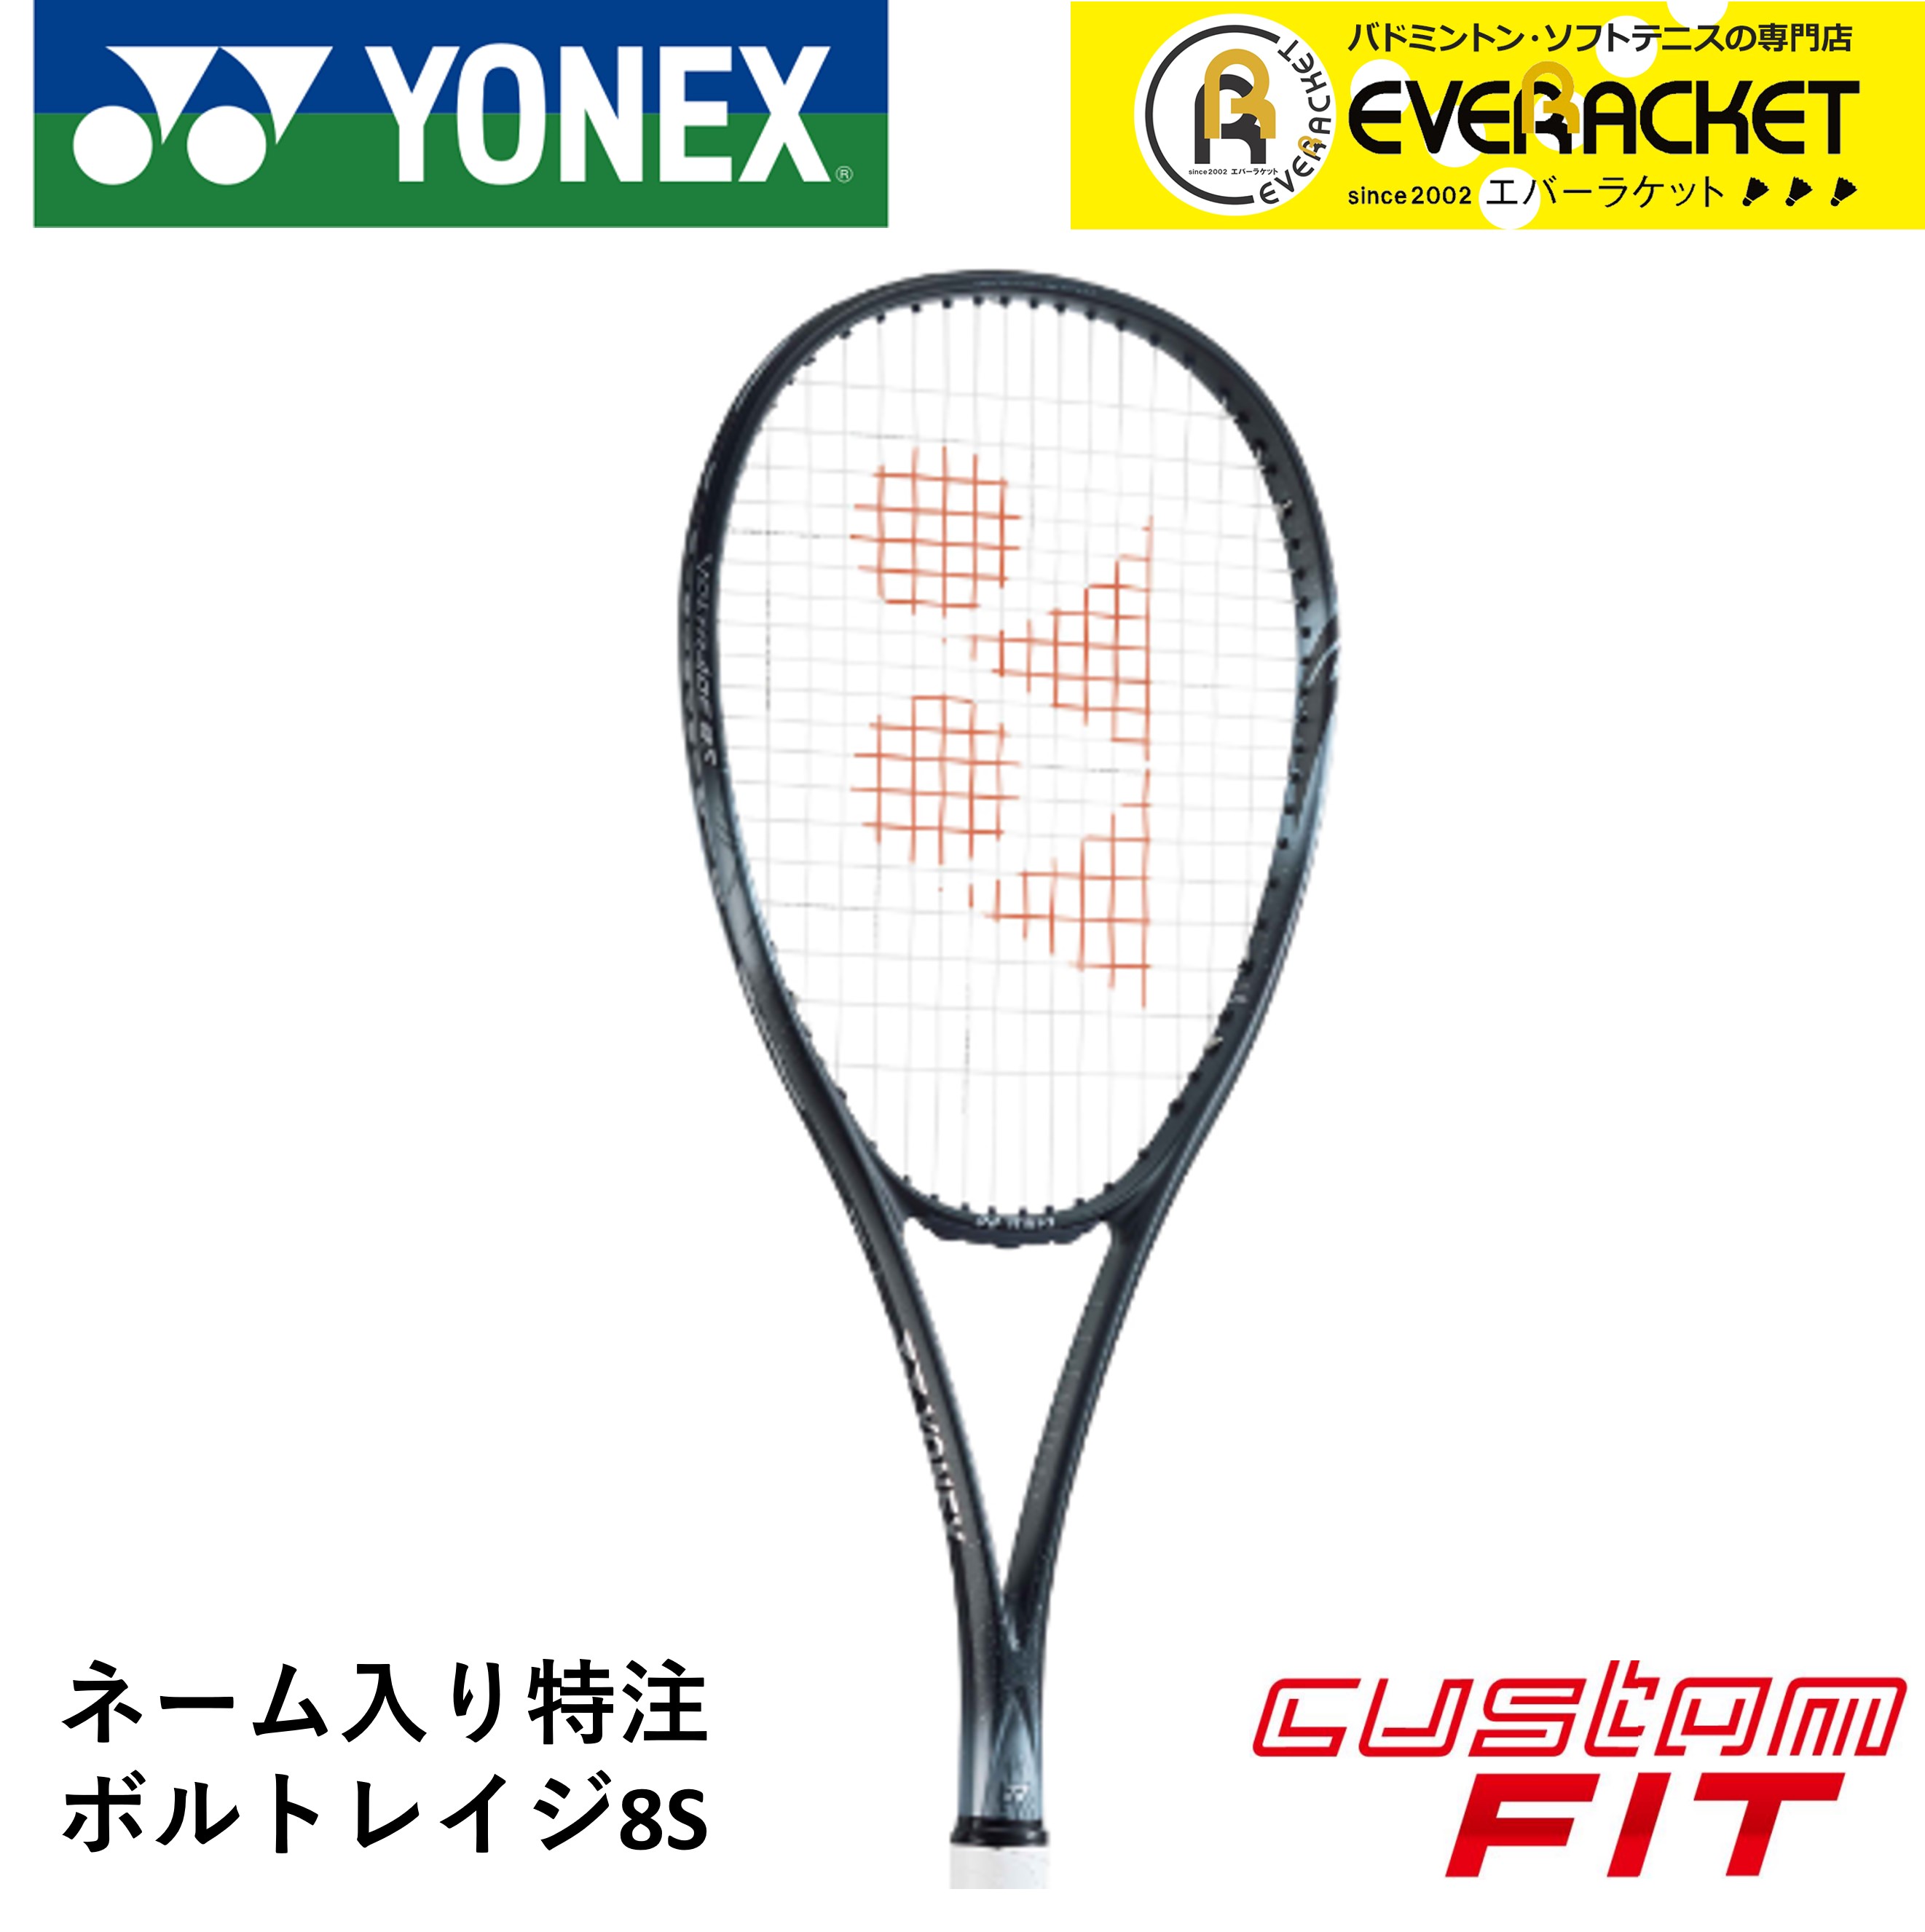 ヤマト工芸 YONEX ボルトレイジ8s ブルー 軟式テニスラケット